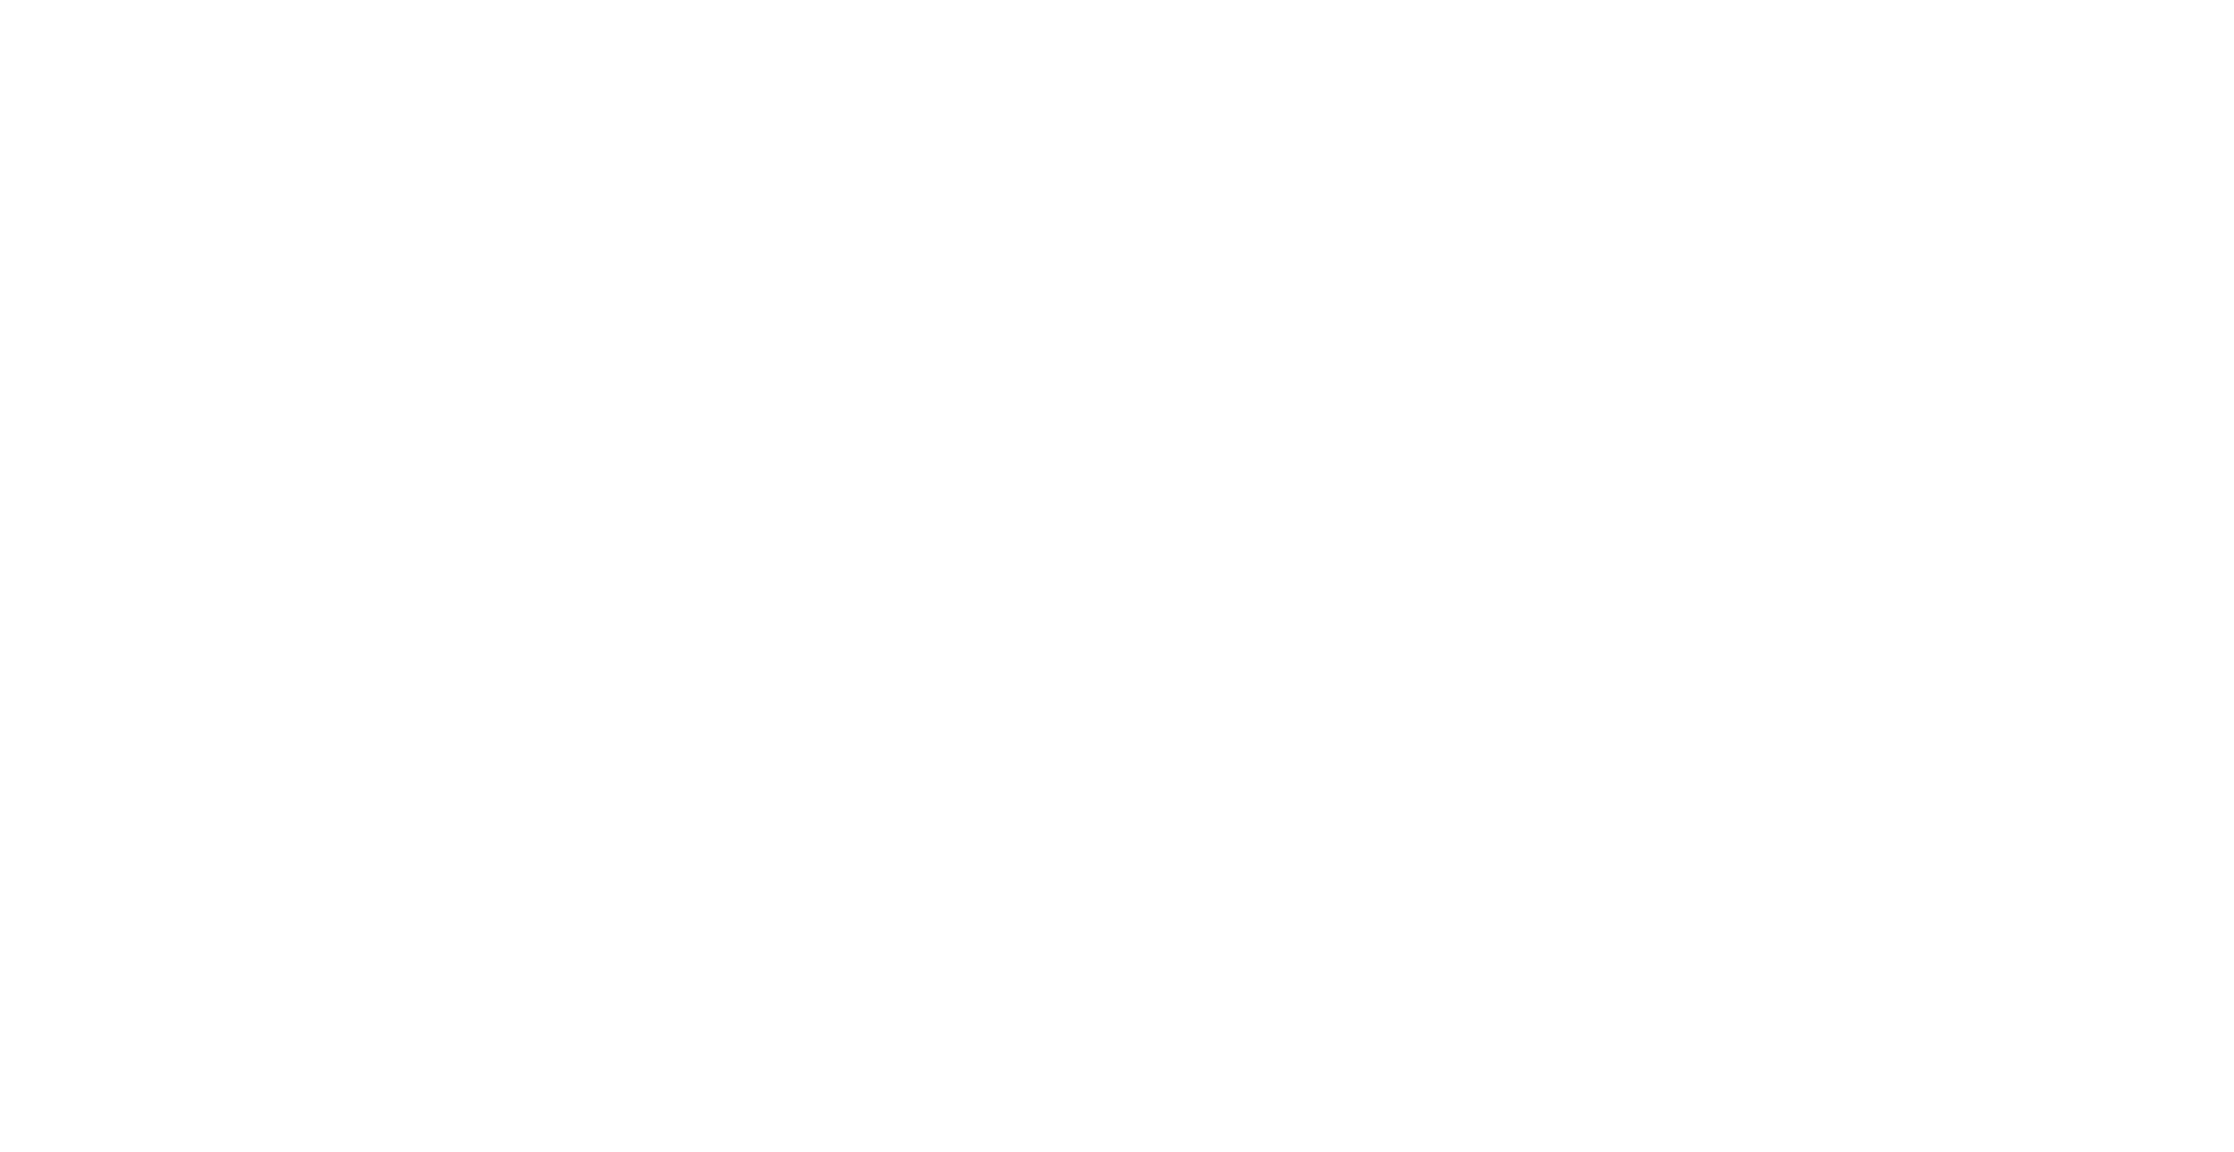 TreeApp